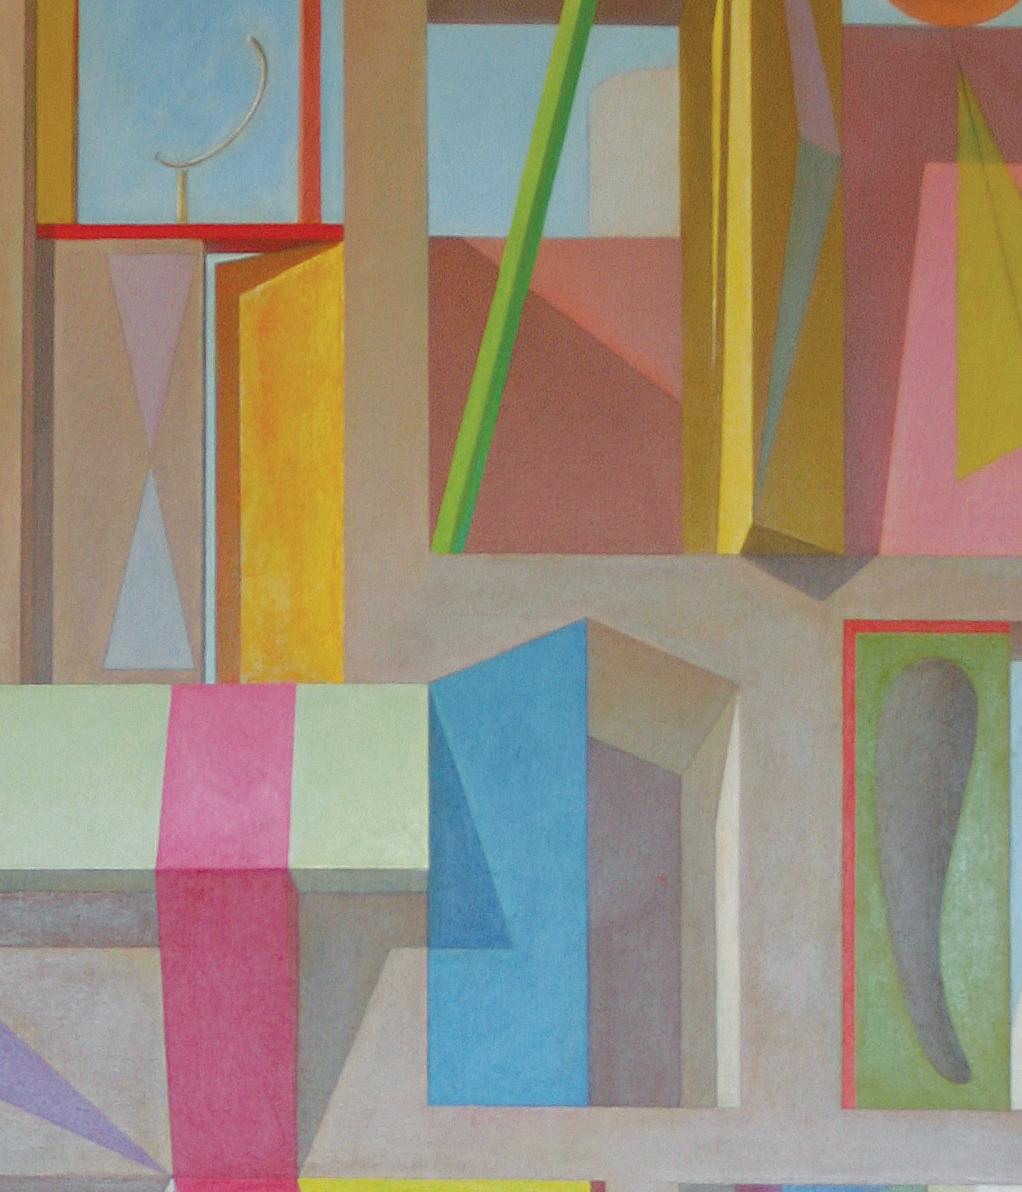 Architektonische Fantasien, Abstrakte geometrische Formen in Farbe, Acryl, 1981 – Painting von Joseph Amarotico